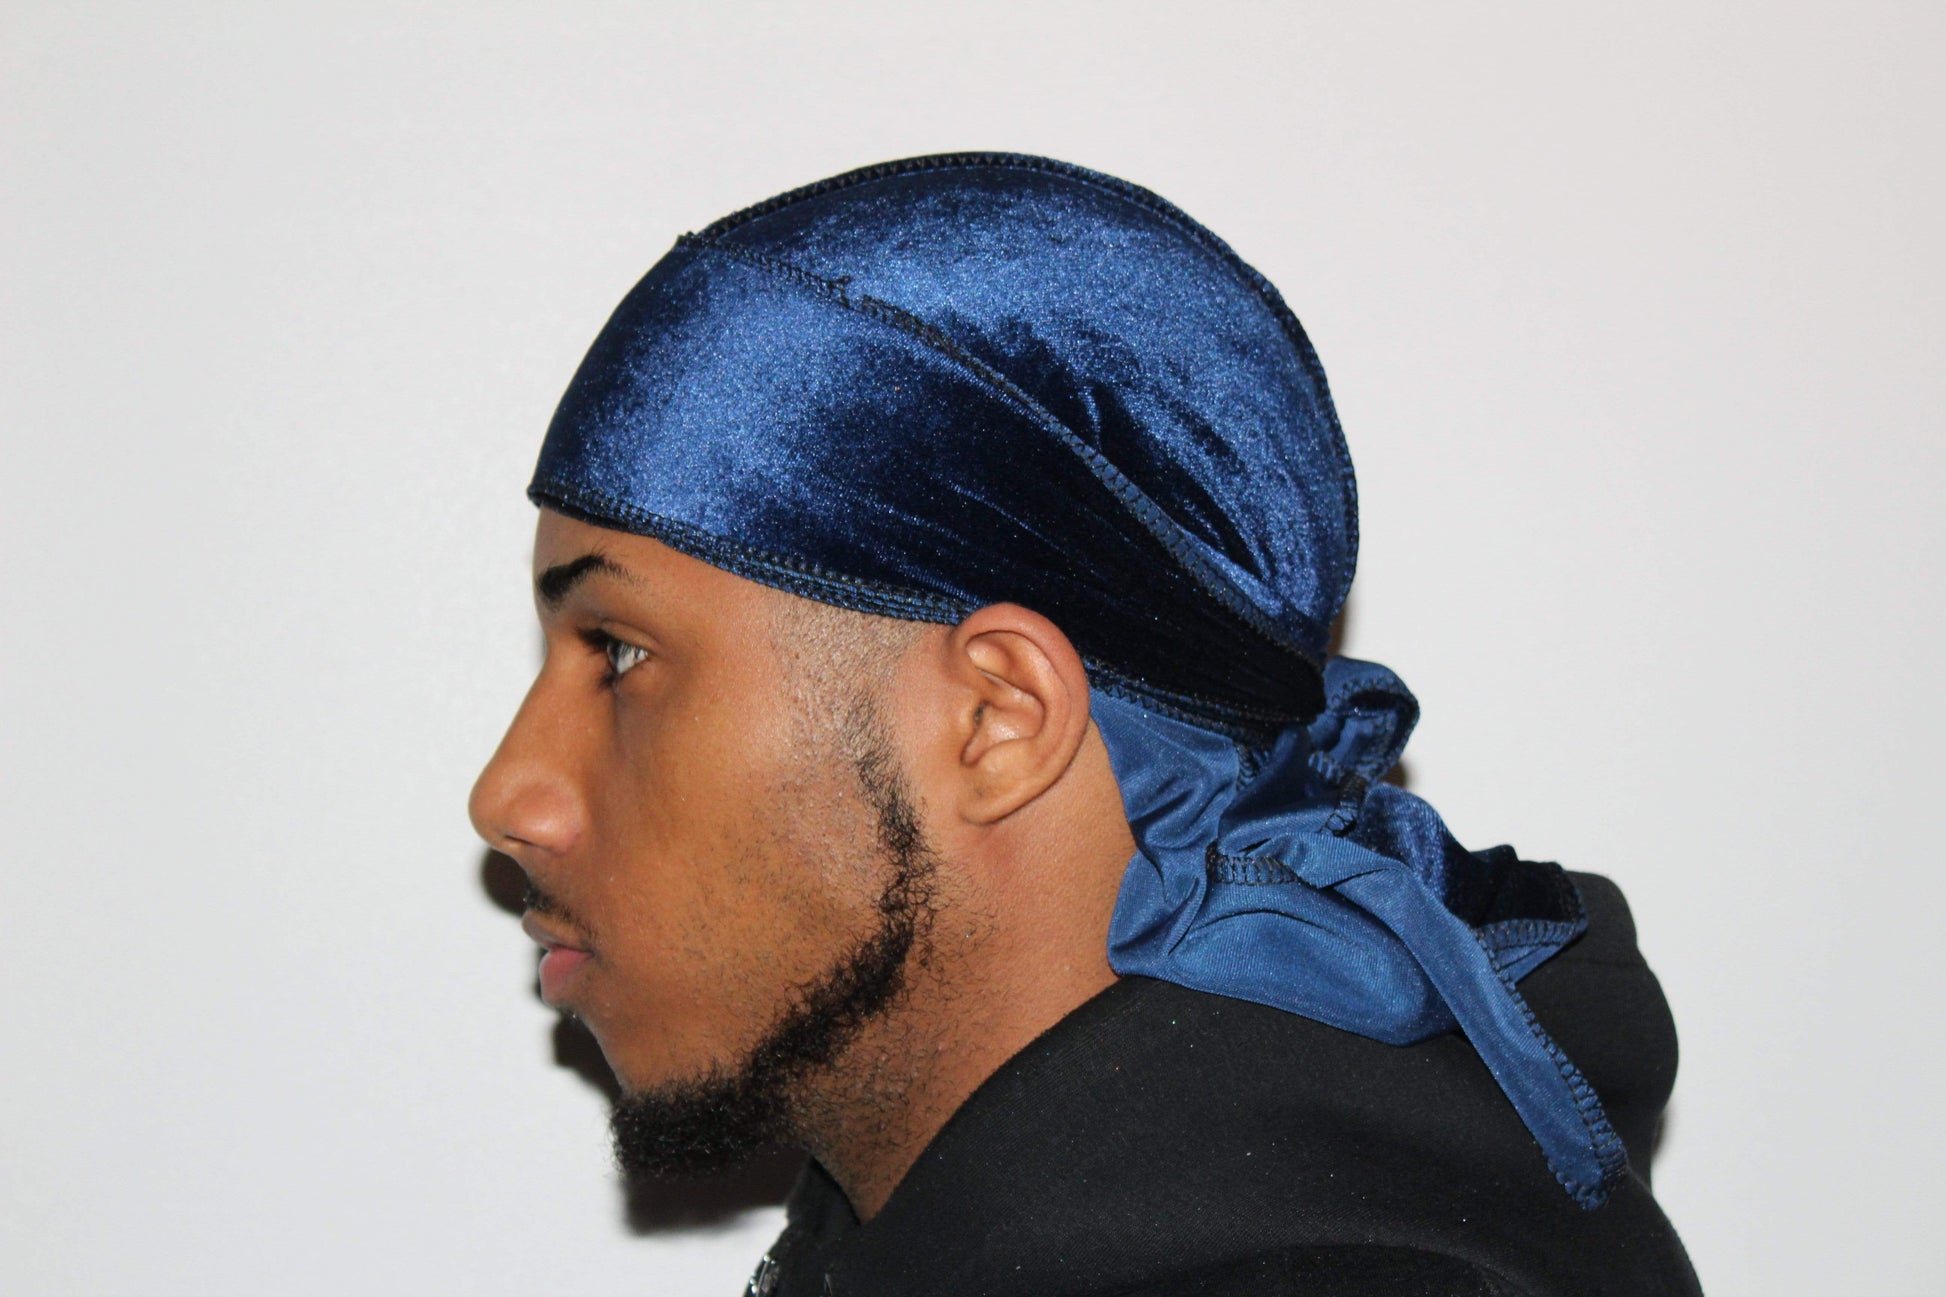 DrippyRags Durags Bonnets Headbands Headwear More Velvet Royal Blue Velvet Durag